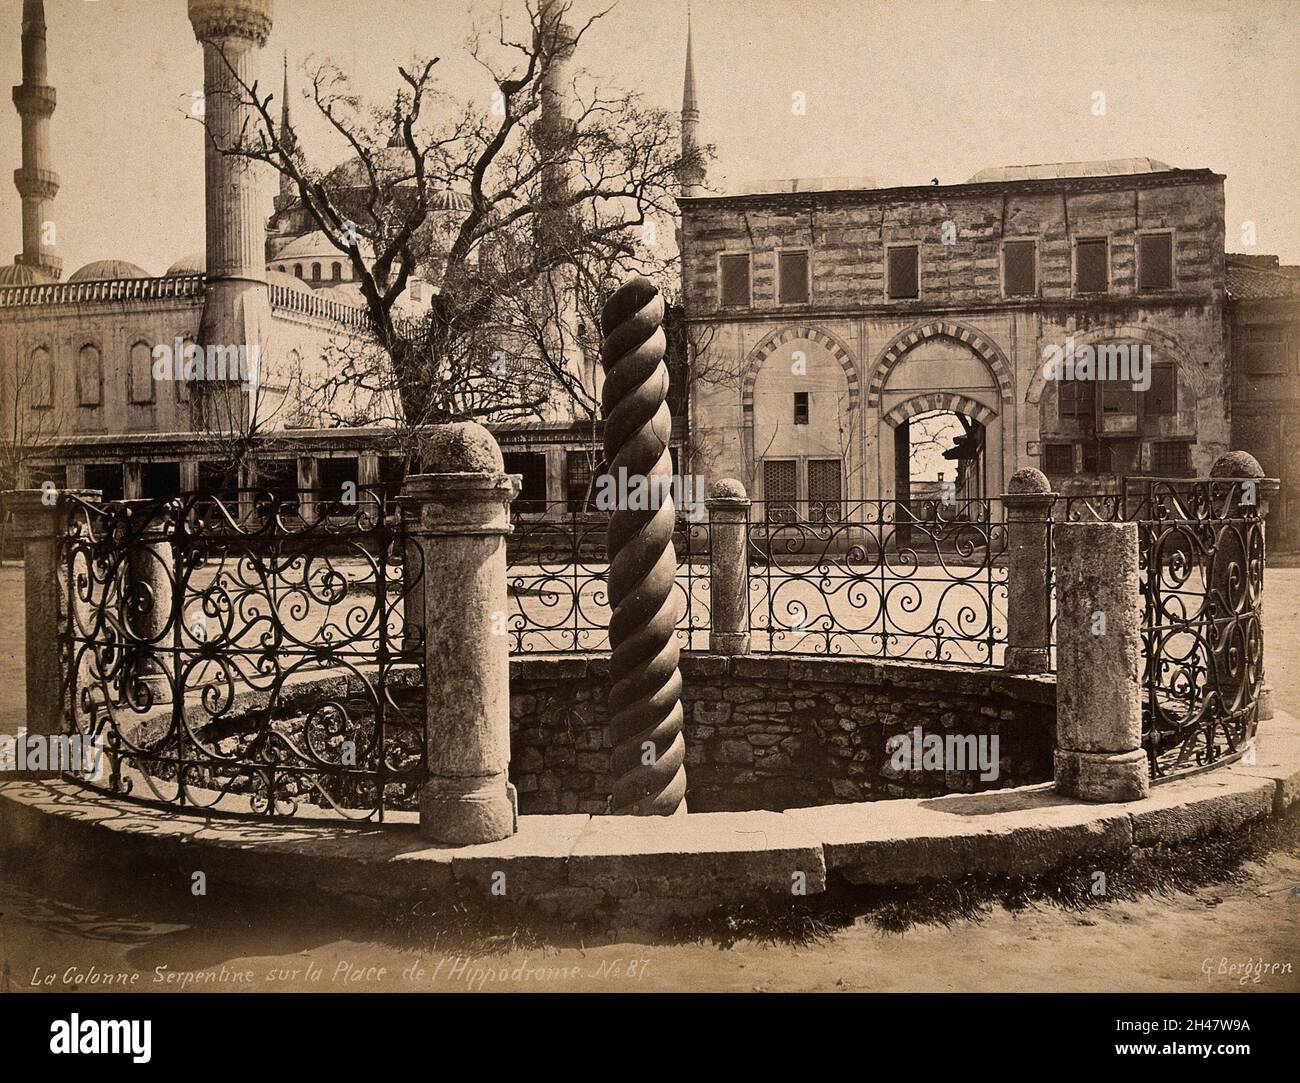 L'Ippodromo, Istanbul, Turchia: La colonna di bronzo serpentina con la Moschea Blu sullo sfondo. Fotografia di Guillaume Berggren, ca. 1880. Foto Stock